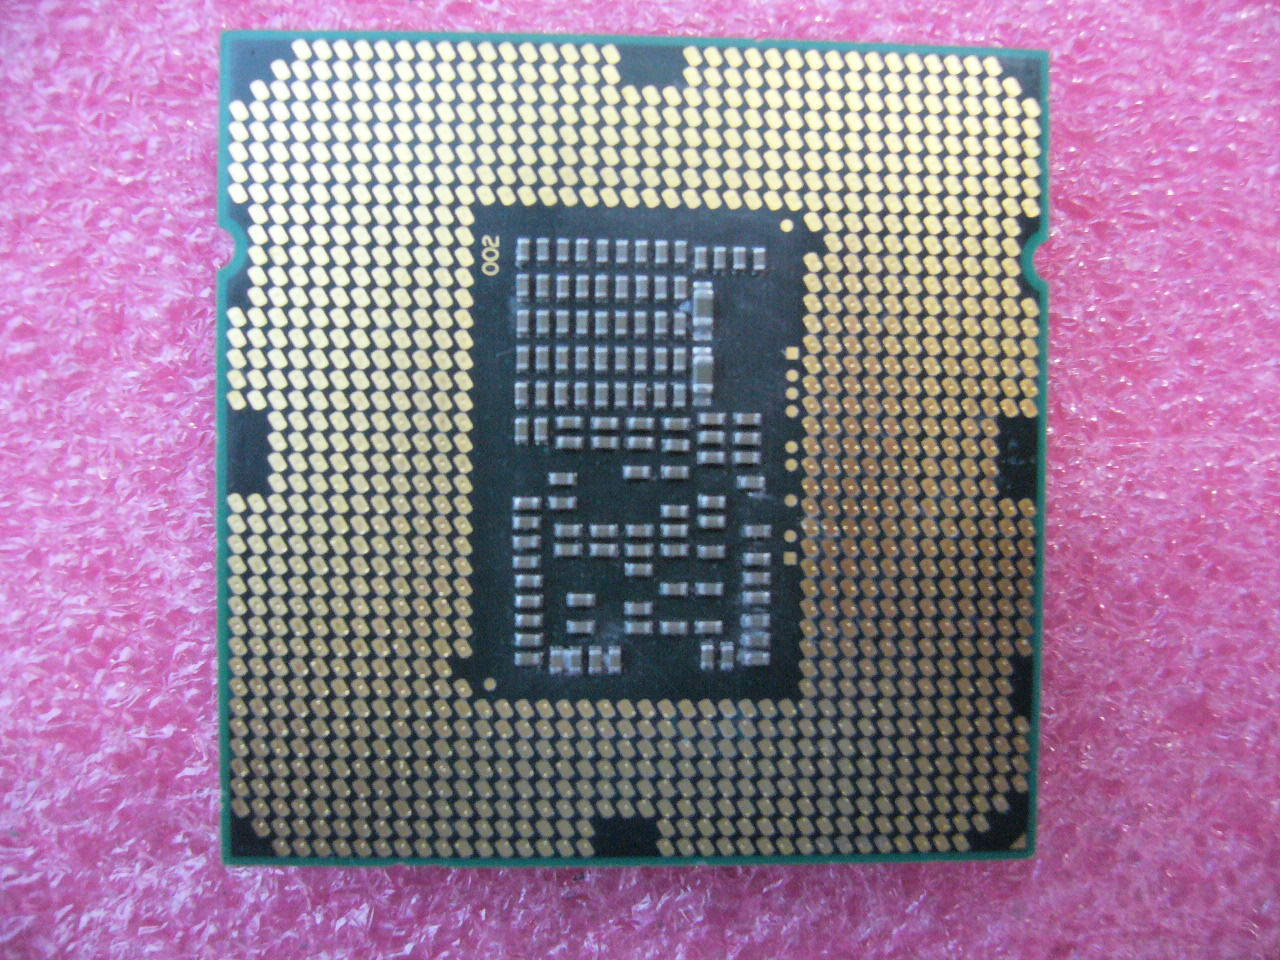 QTY 1x INTEL Pentium CPU G6960 2.93GHZ/3MB LGA1156 SLBT6 - Click Image to Close